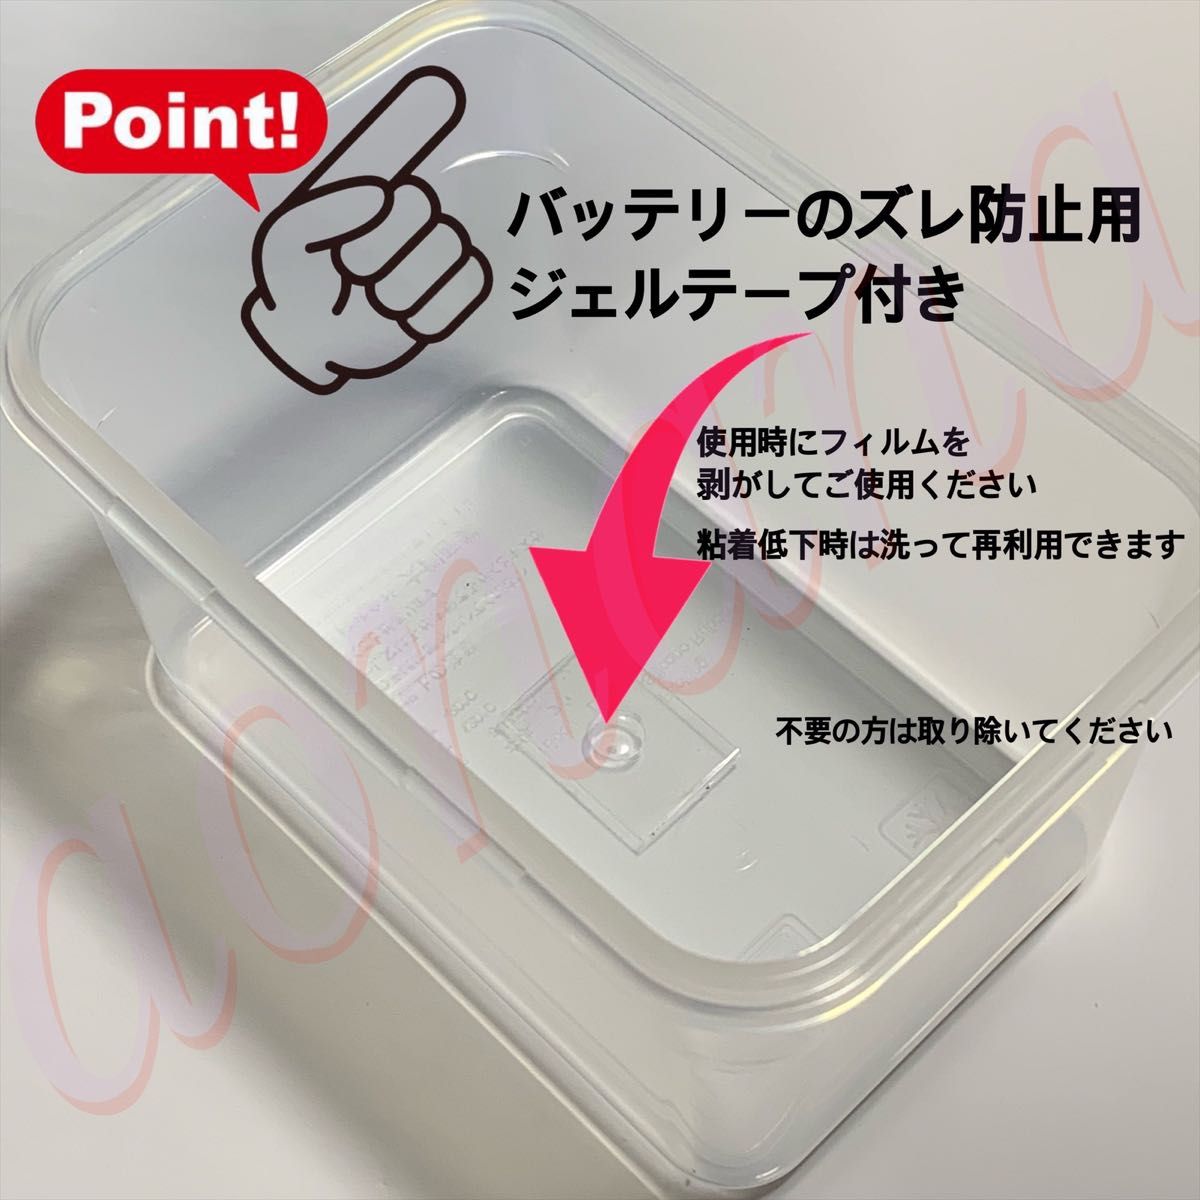 新！マキタ14.4vバッテリーを電動リールに Daiwa ダイワ SHIMANO シマノ